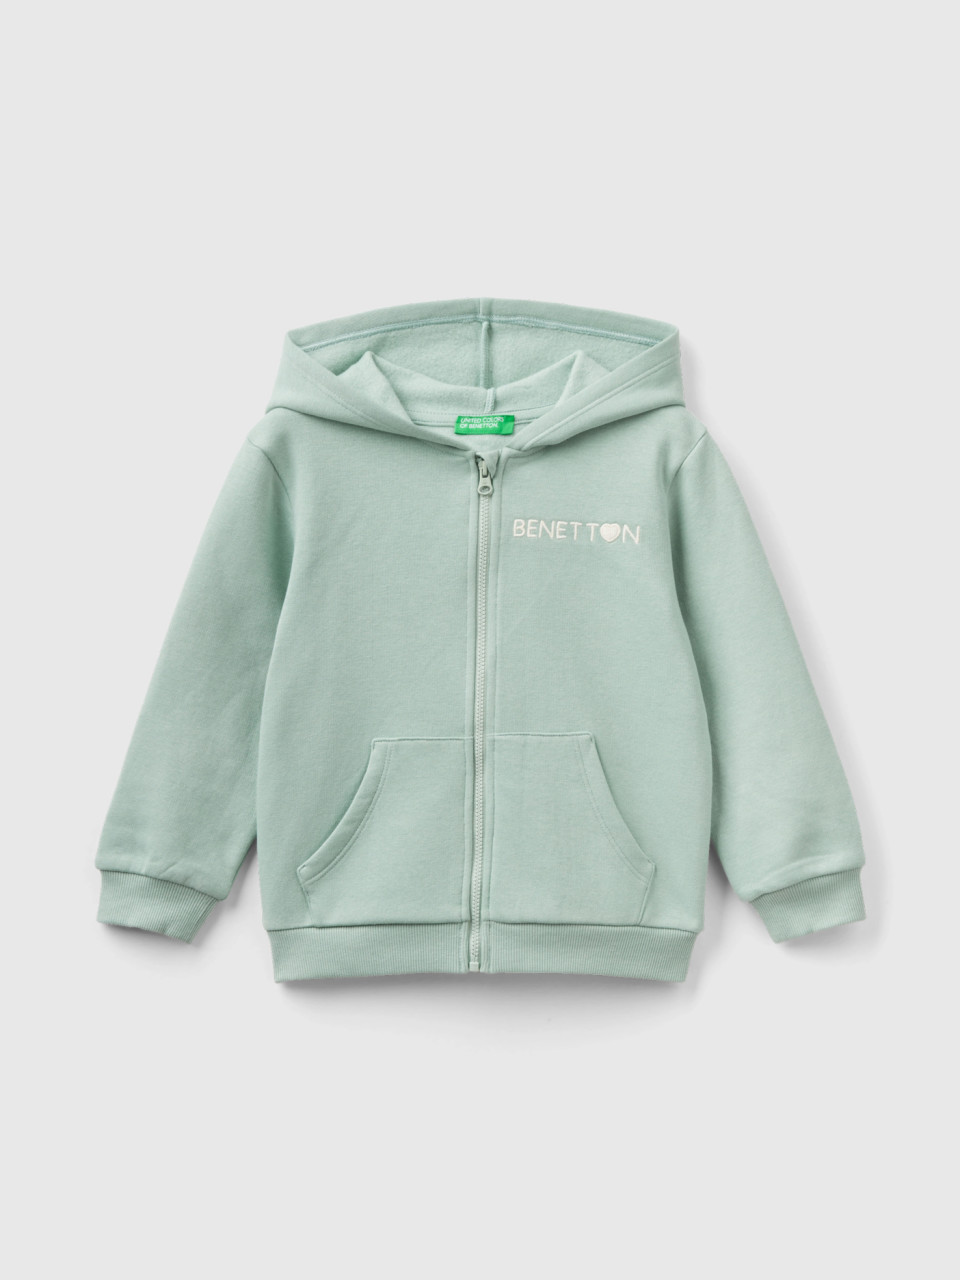 Benetton, Zip-up Sweatshirt In Cotton Blend, Aqua, Kids